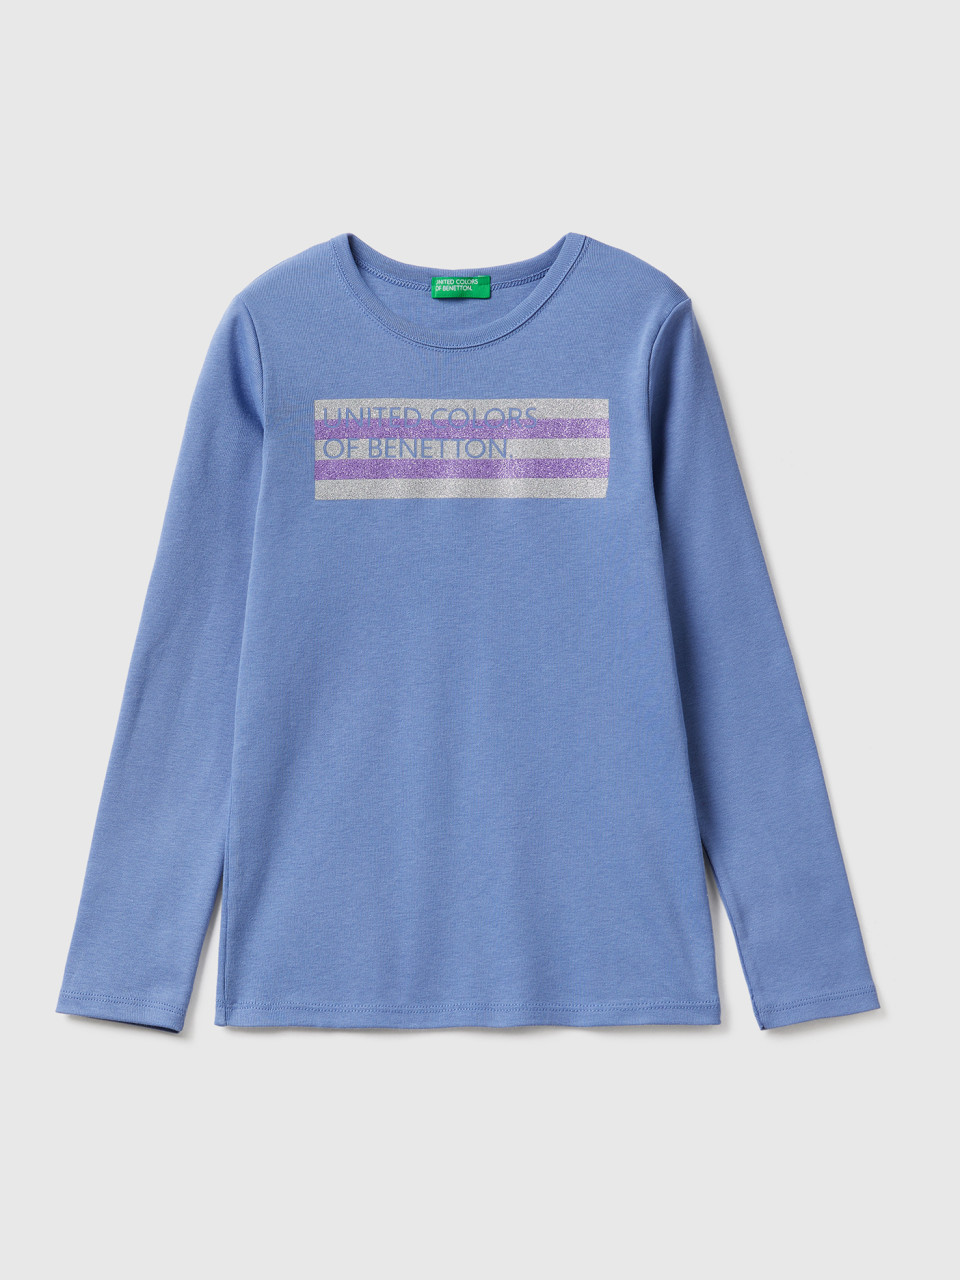 Benetton, T-shirt Mit Langen Ärmeln Und Glitzerprint, Azurblau, female